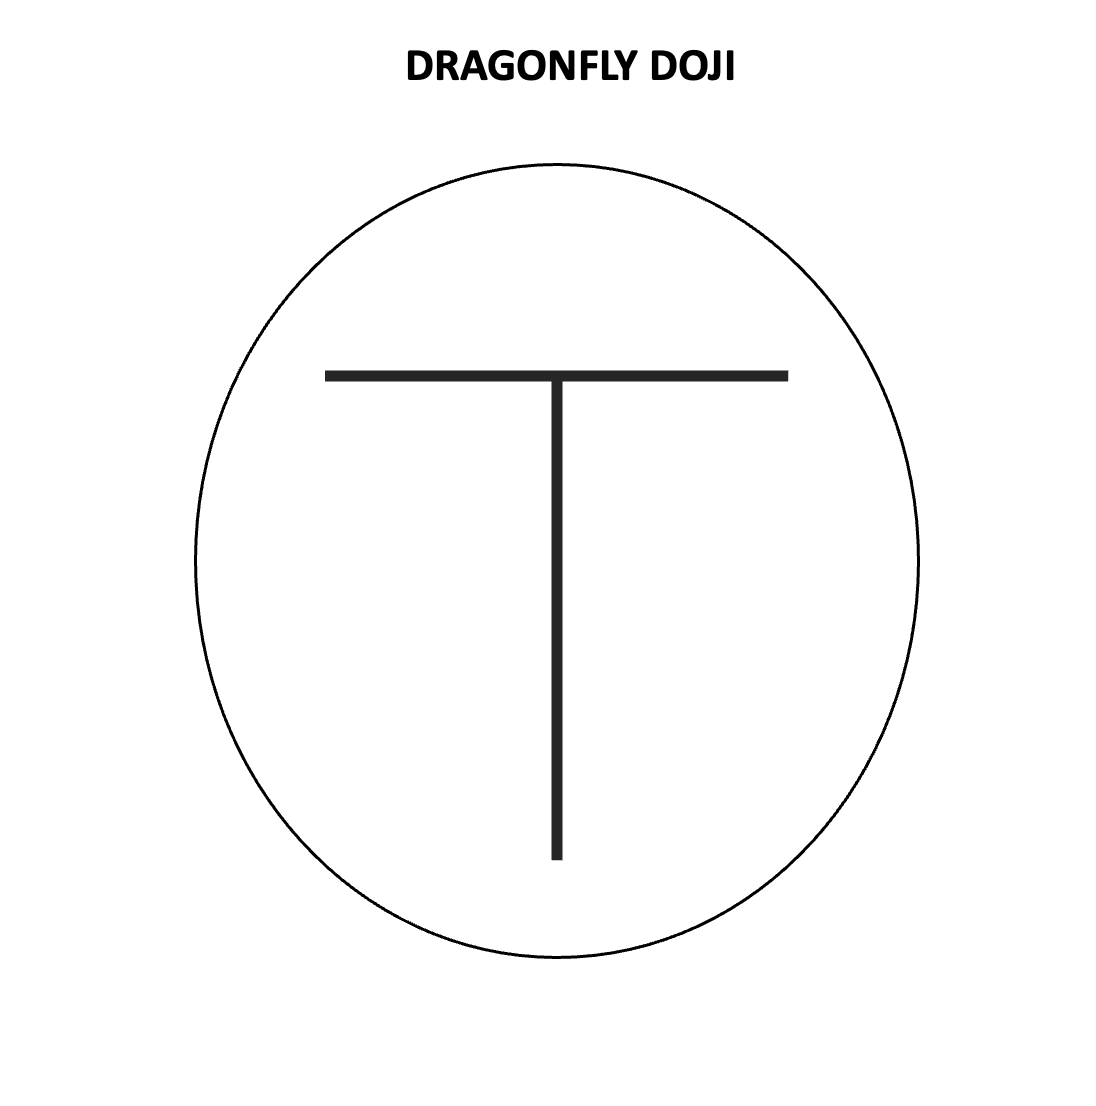 Dragonfly Doji Formation